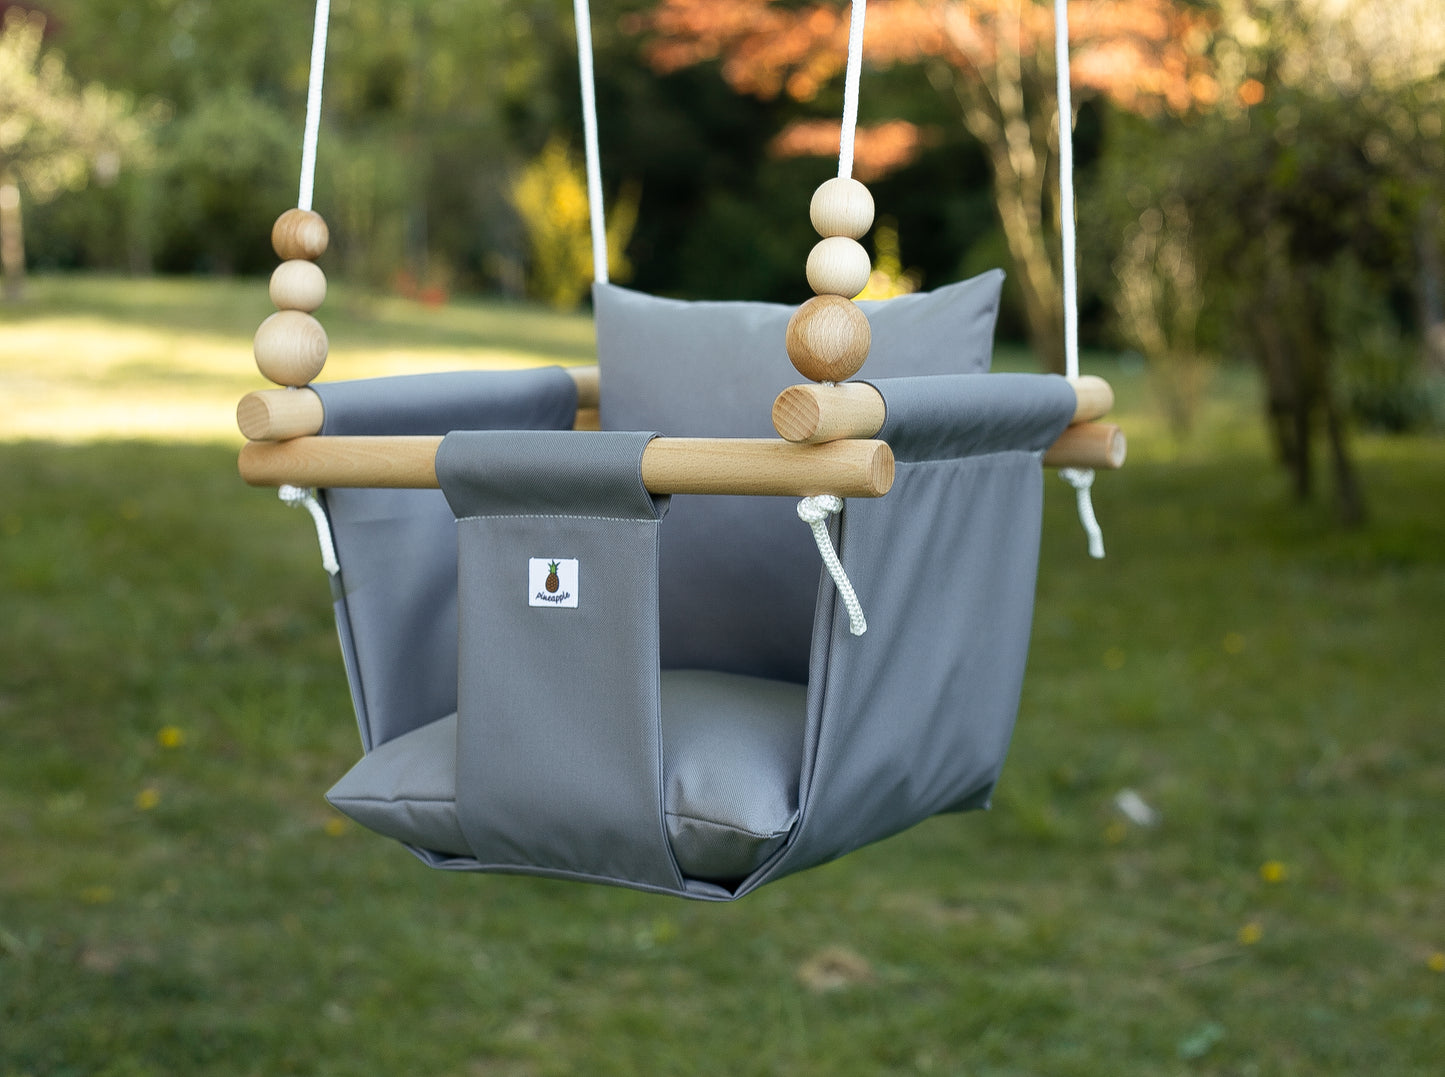 Babyschaukel outdoor in grau